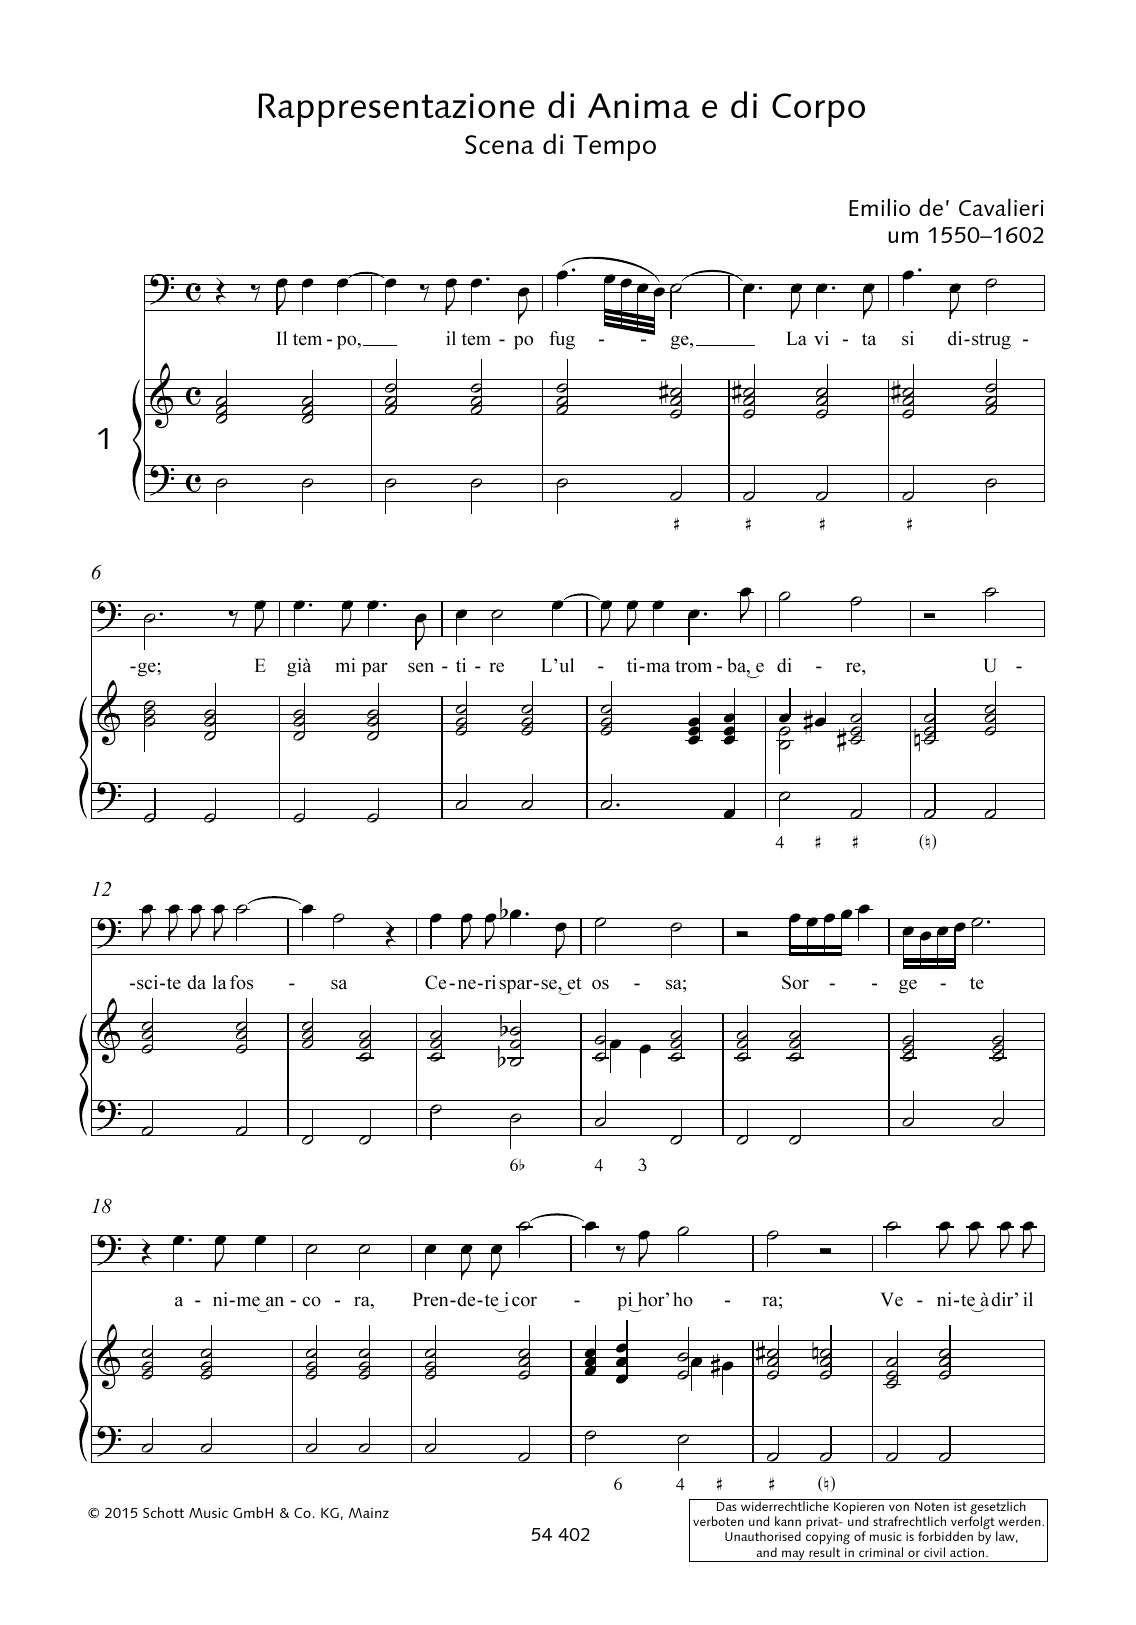 Download Emilio de Cavalieri Il tempo fugge, La vita si distrugge Sheet Music and learn how to play Piano & Vocal PDF digital score in minutes